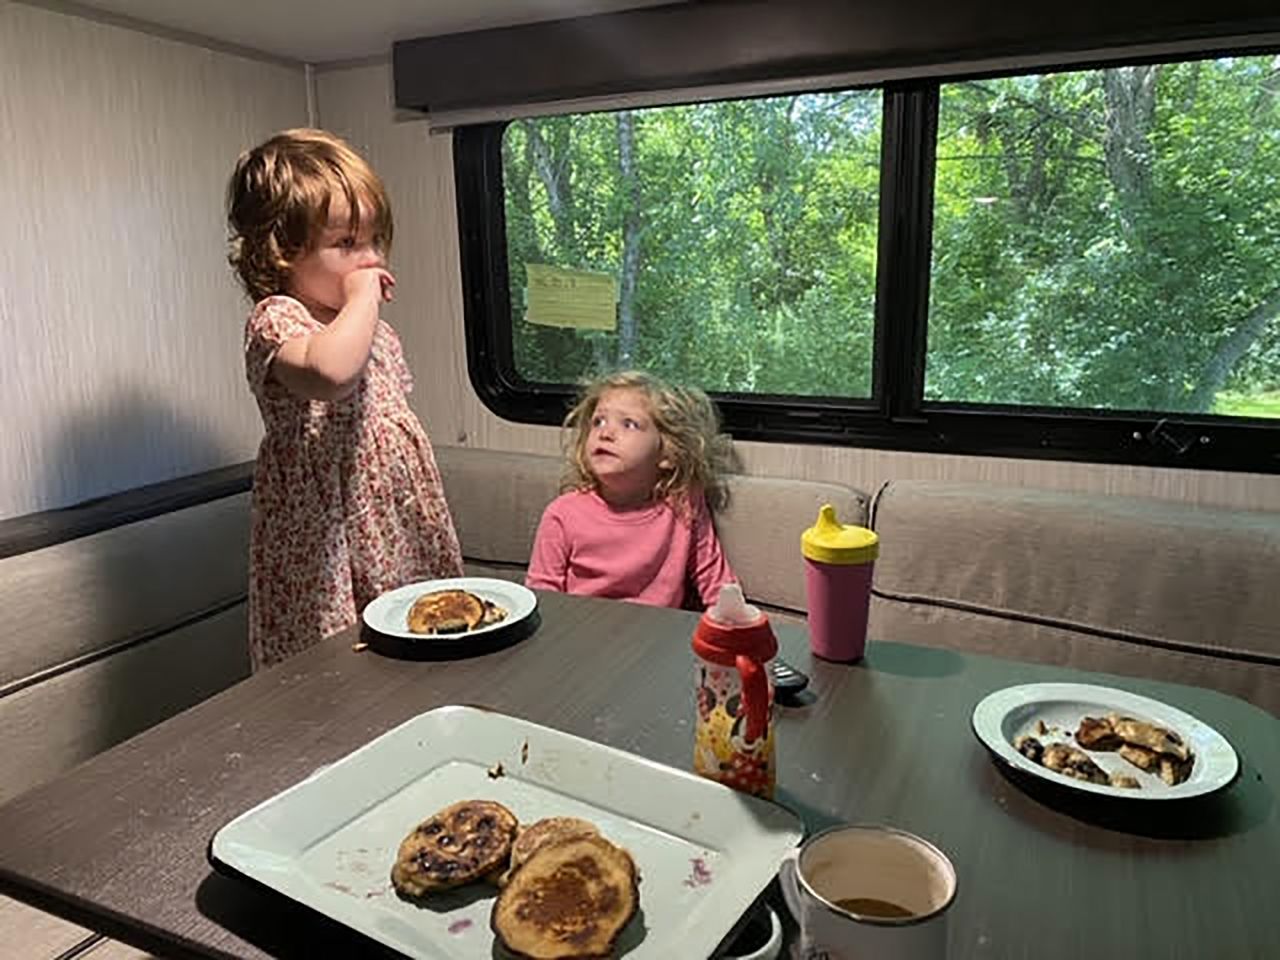 The Sherer children, Hendrix and Lennon, enjoy pancakes inside the family trailer.